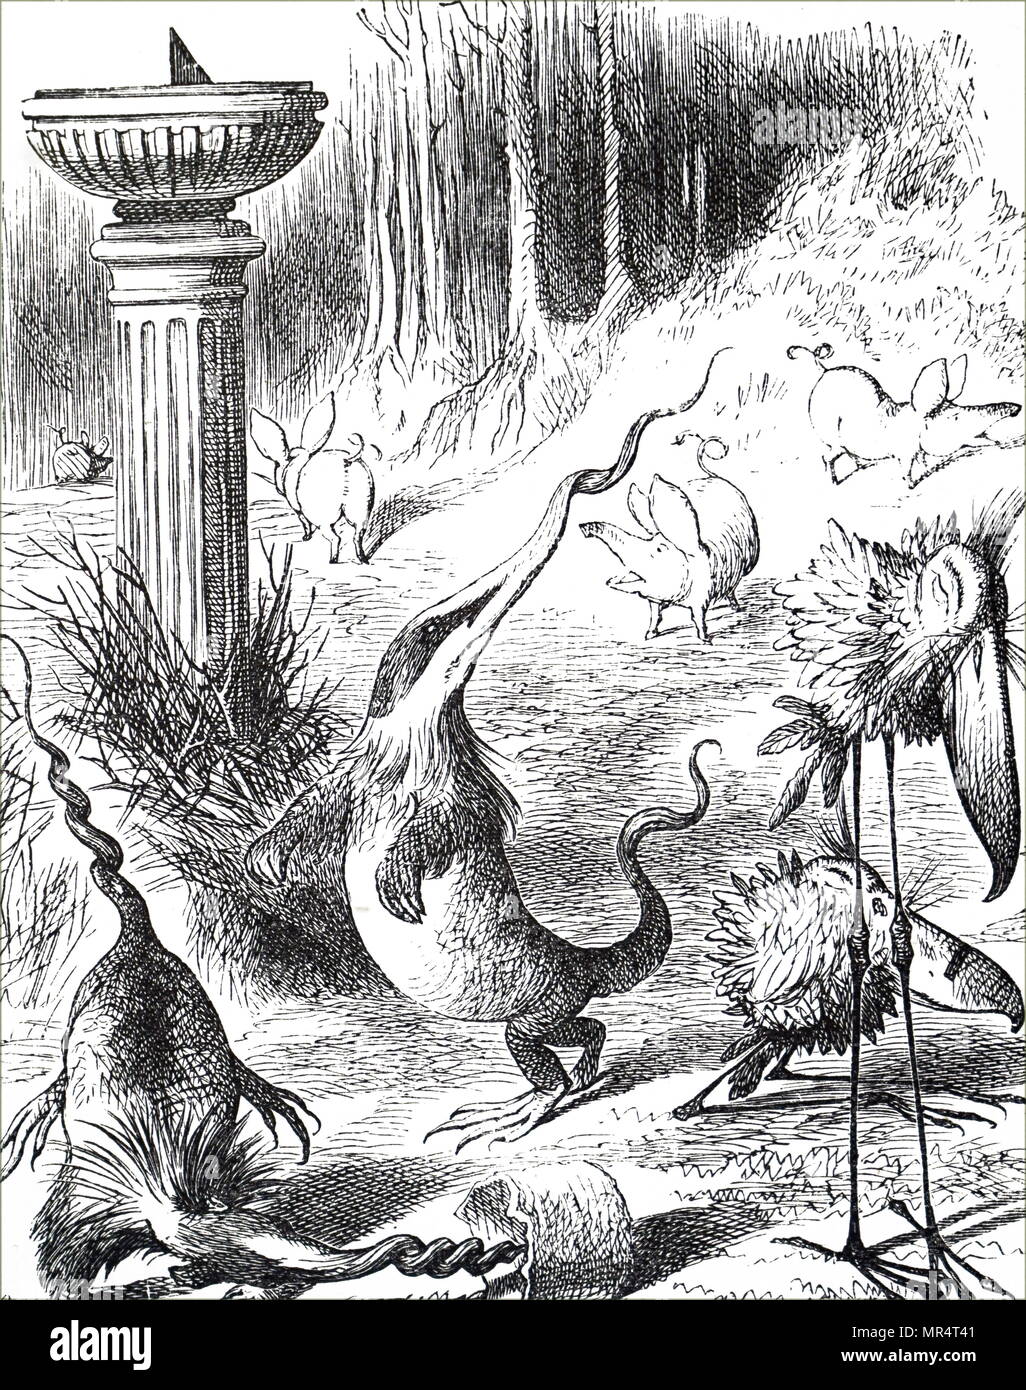 Illustration représentant une scène de Lewis Carroll, dans de l'autre côté, "et ce qu'Alice a trouvé là' - Humpty Dumpty explique le poème Jabberwocky à Alice. Toves sont comme les blaireaux avec tire-bouchon nez, et faire leur nid sous cadrans solaires. L'Illustre John Tenniel (1820-1914), un illustrateur anglais, graphique, humoriste et caricaturiste politique. En date du 19e siècle Banque D'Images